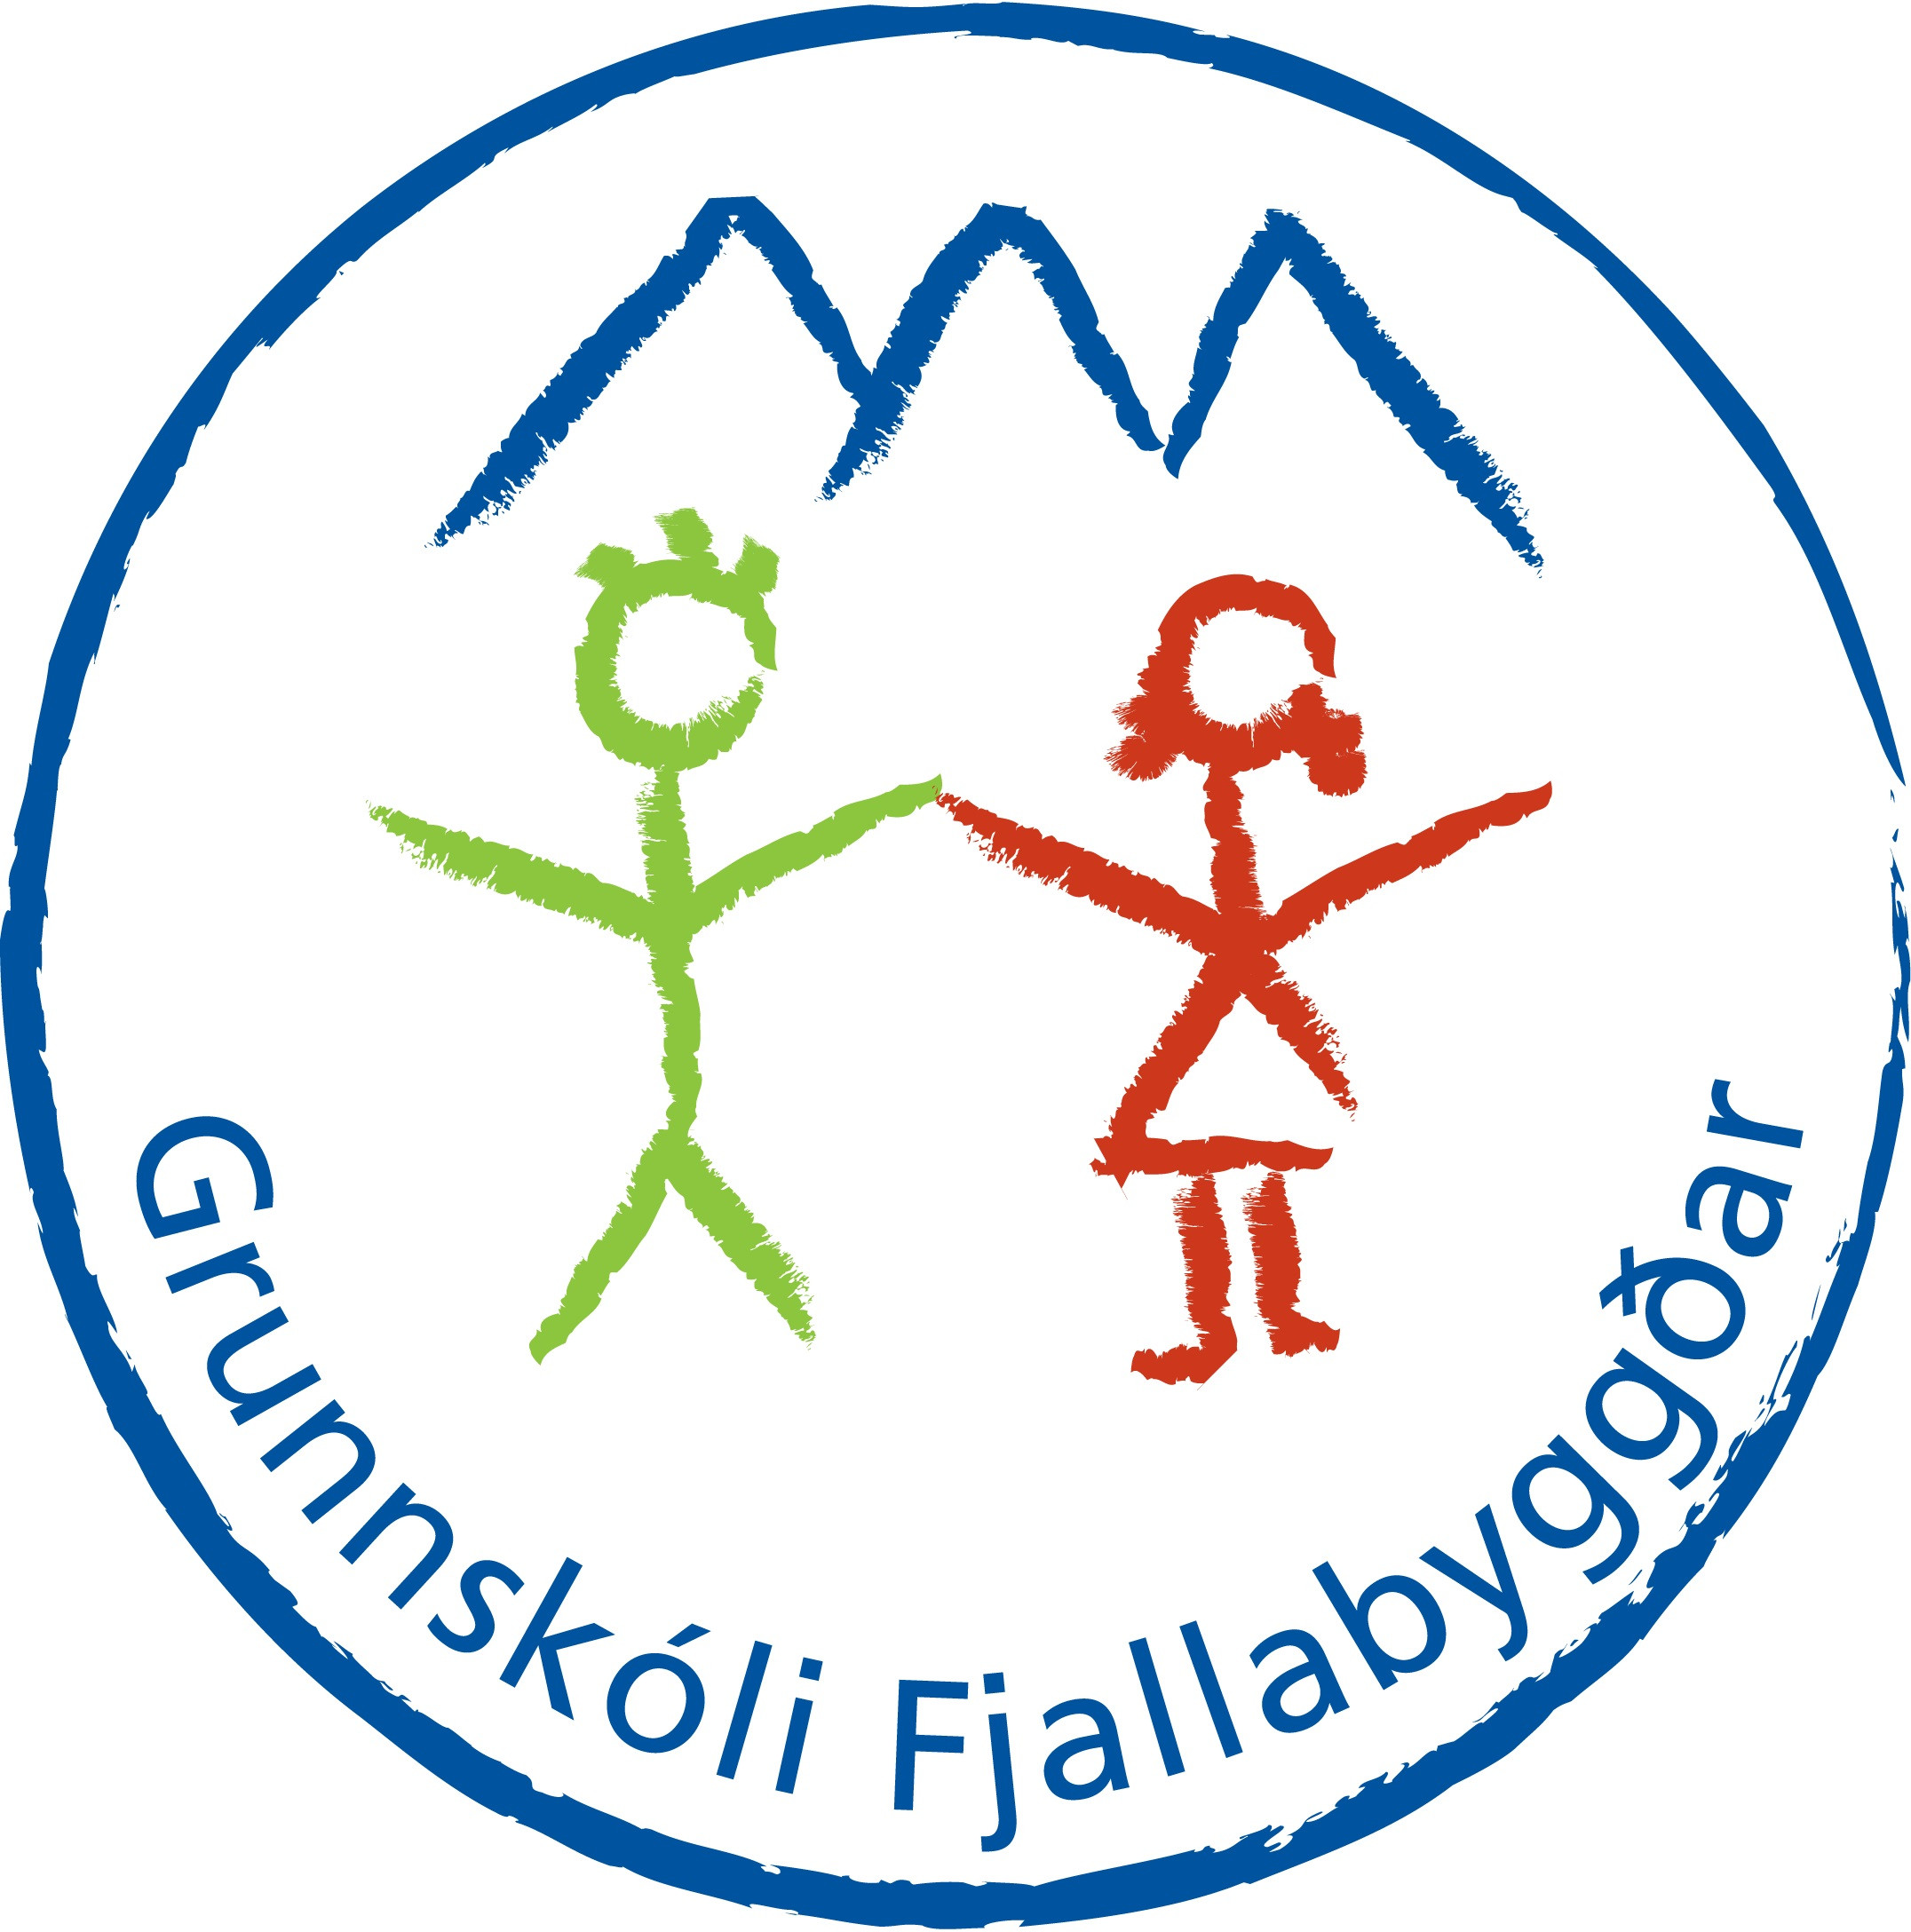 Merki Grunnskóla Fjallabyggðar